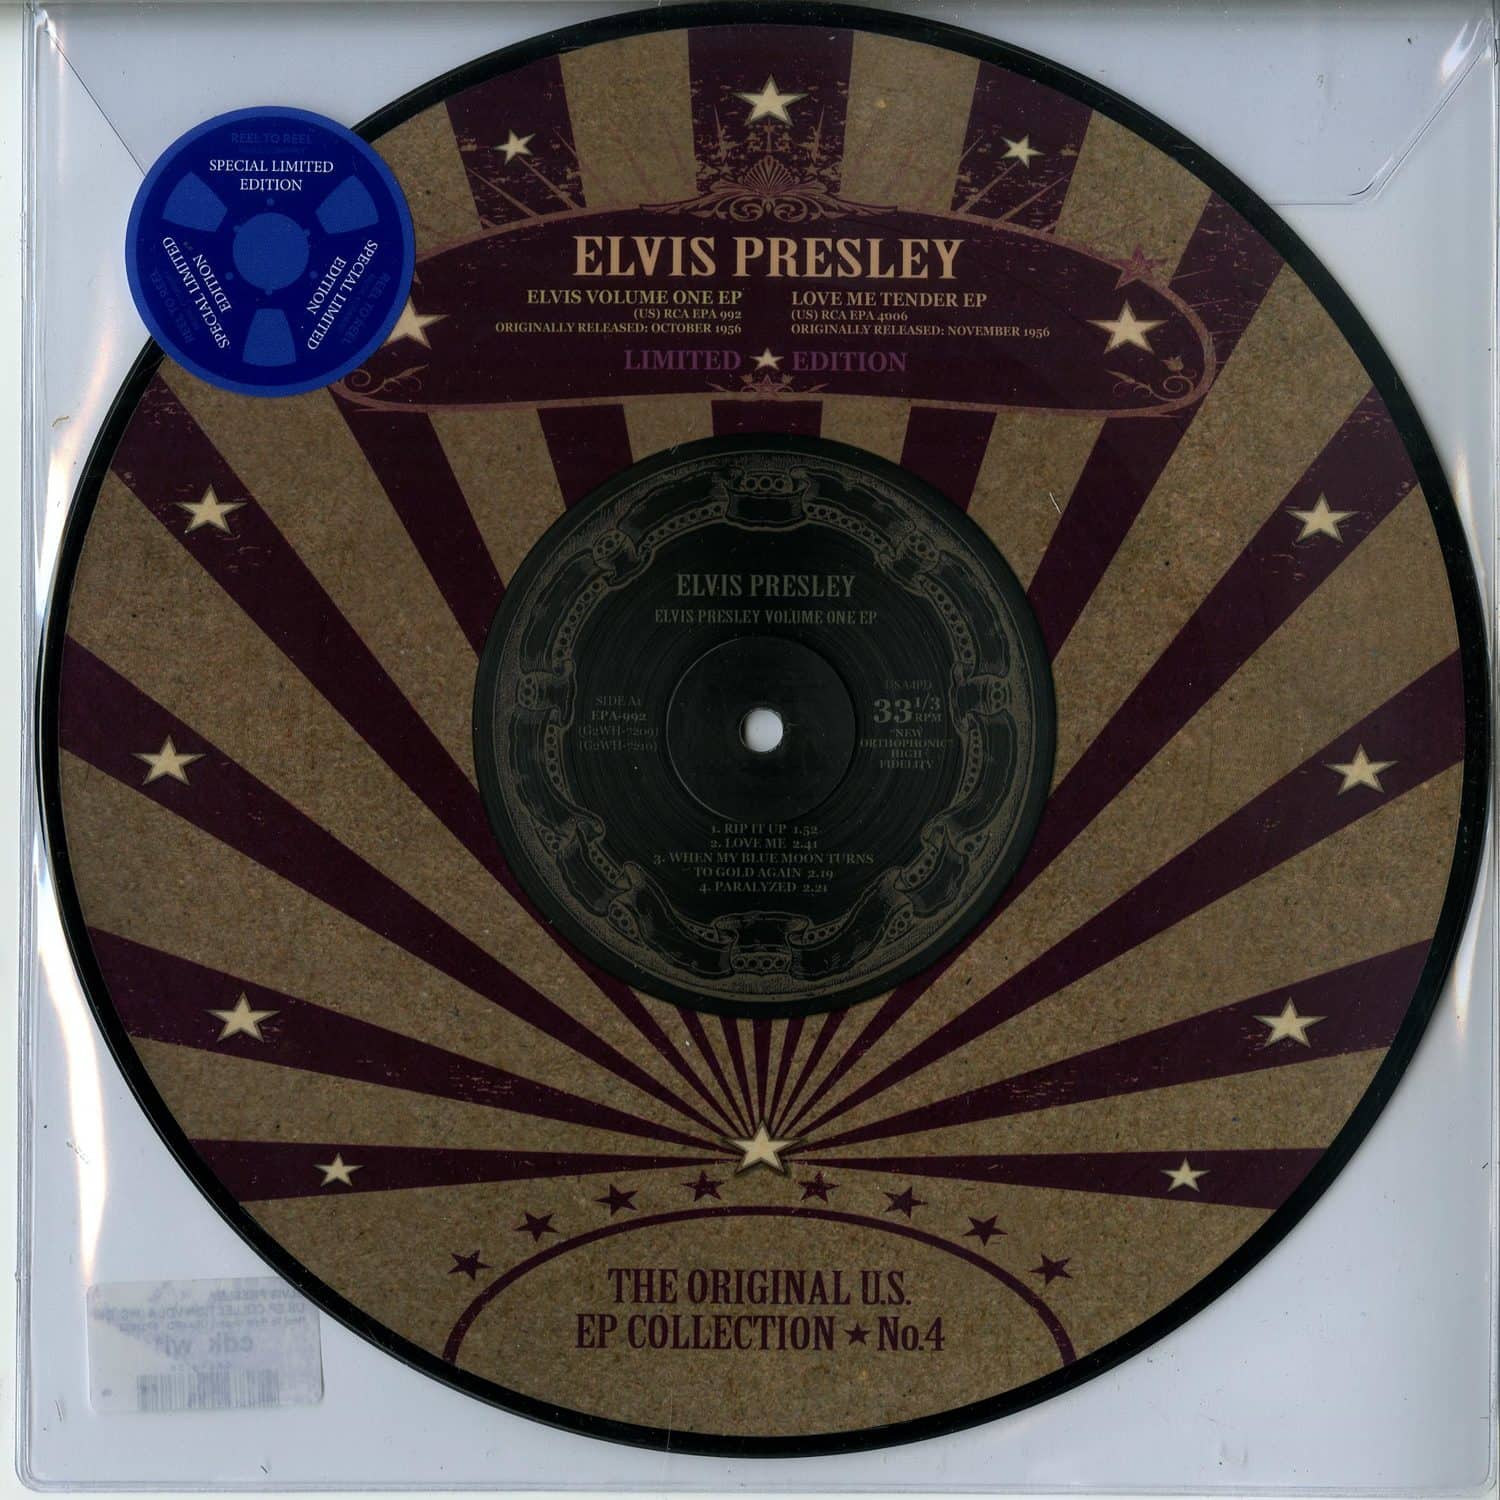 Elvis Presley - US EP COLLECTION VOL.4 